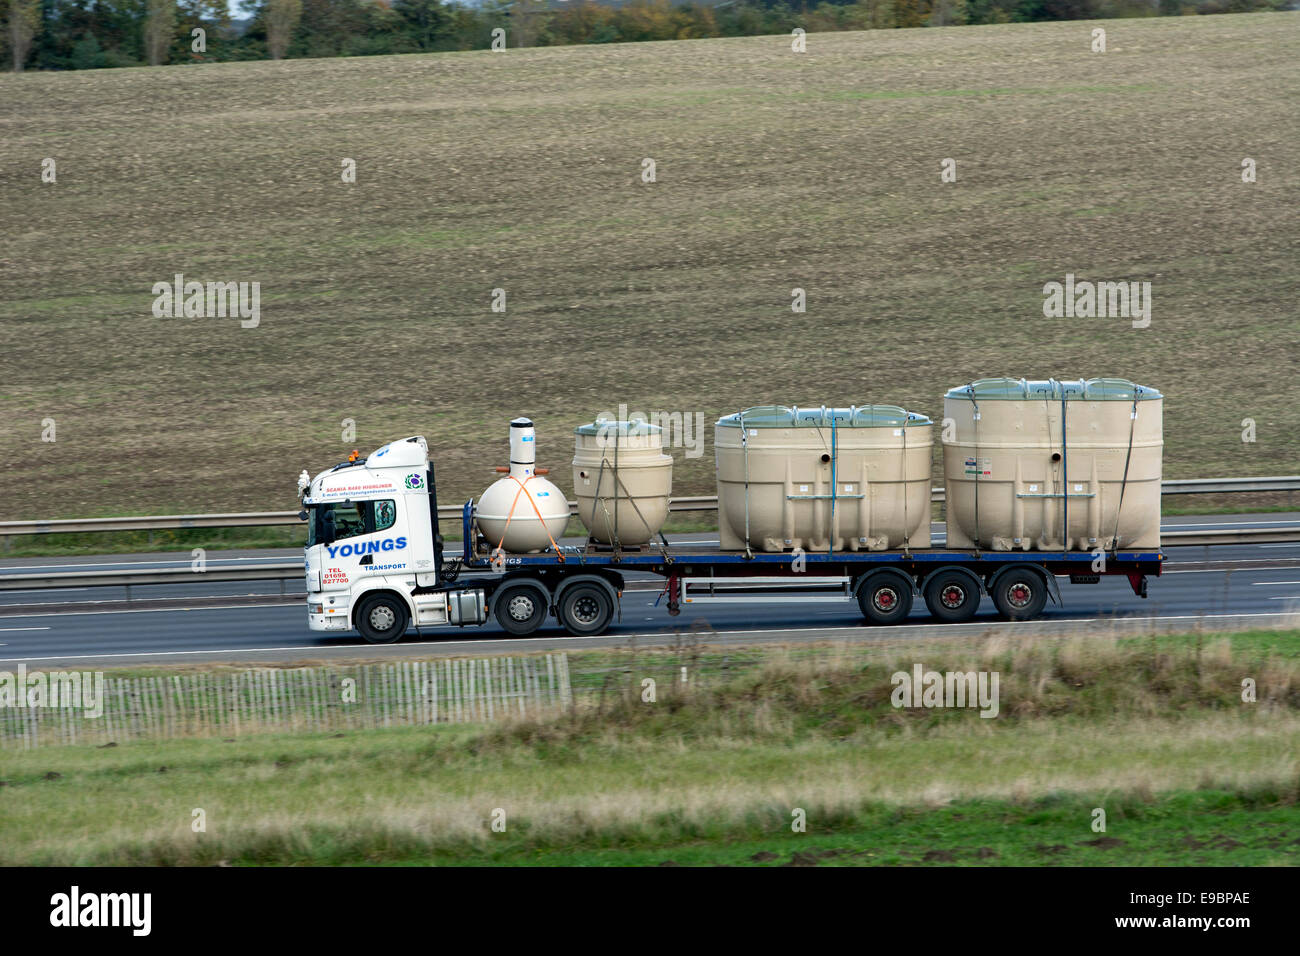 Lorry carrying cesspit tanks on M40 motorway, Warwickshire, UK Stock Photo